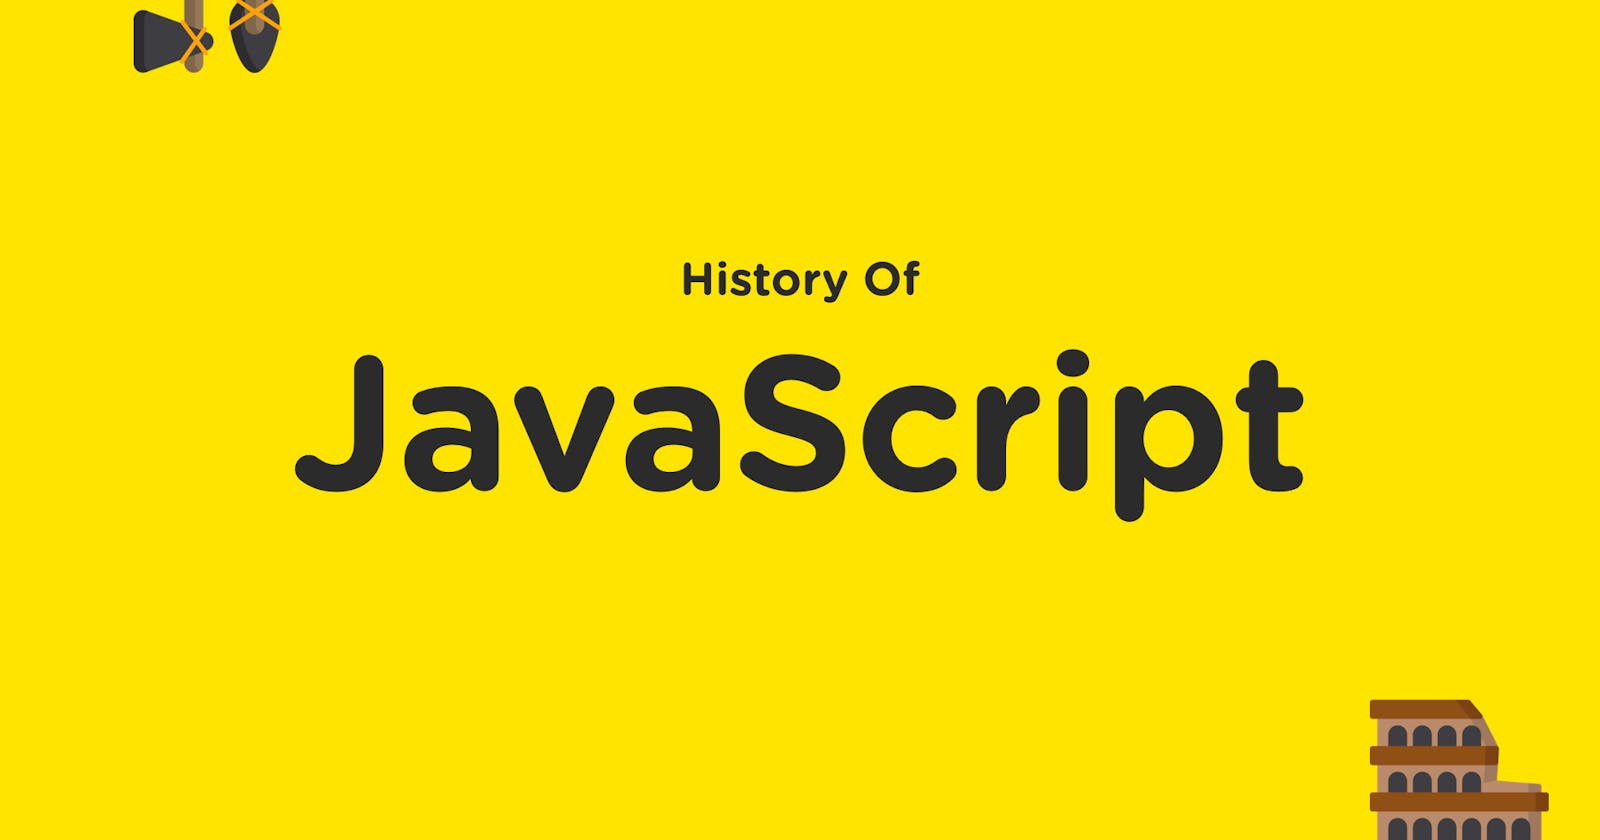 History of Javascript